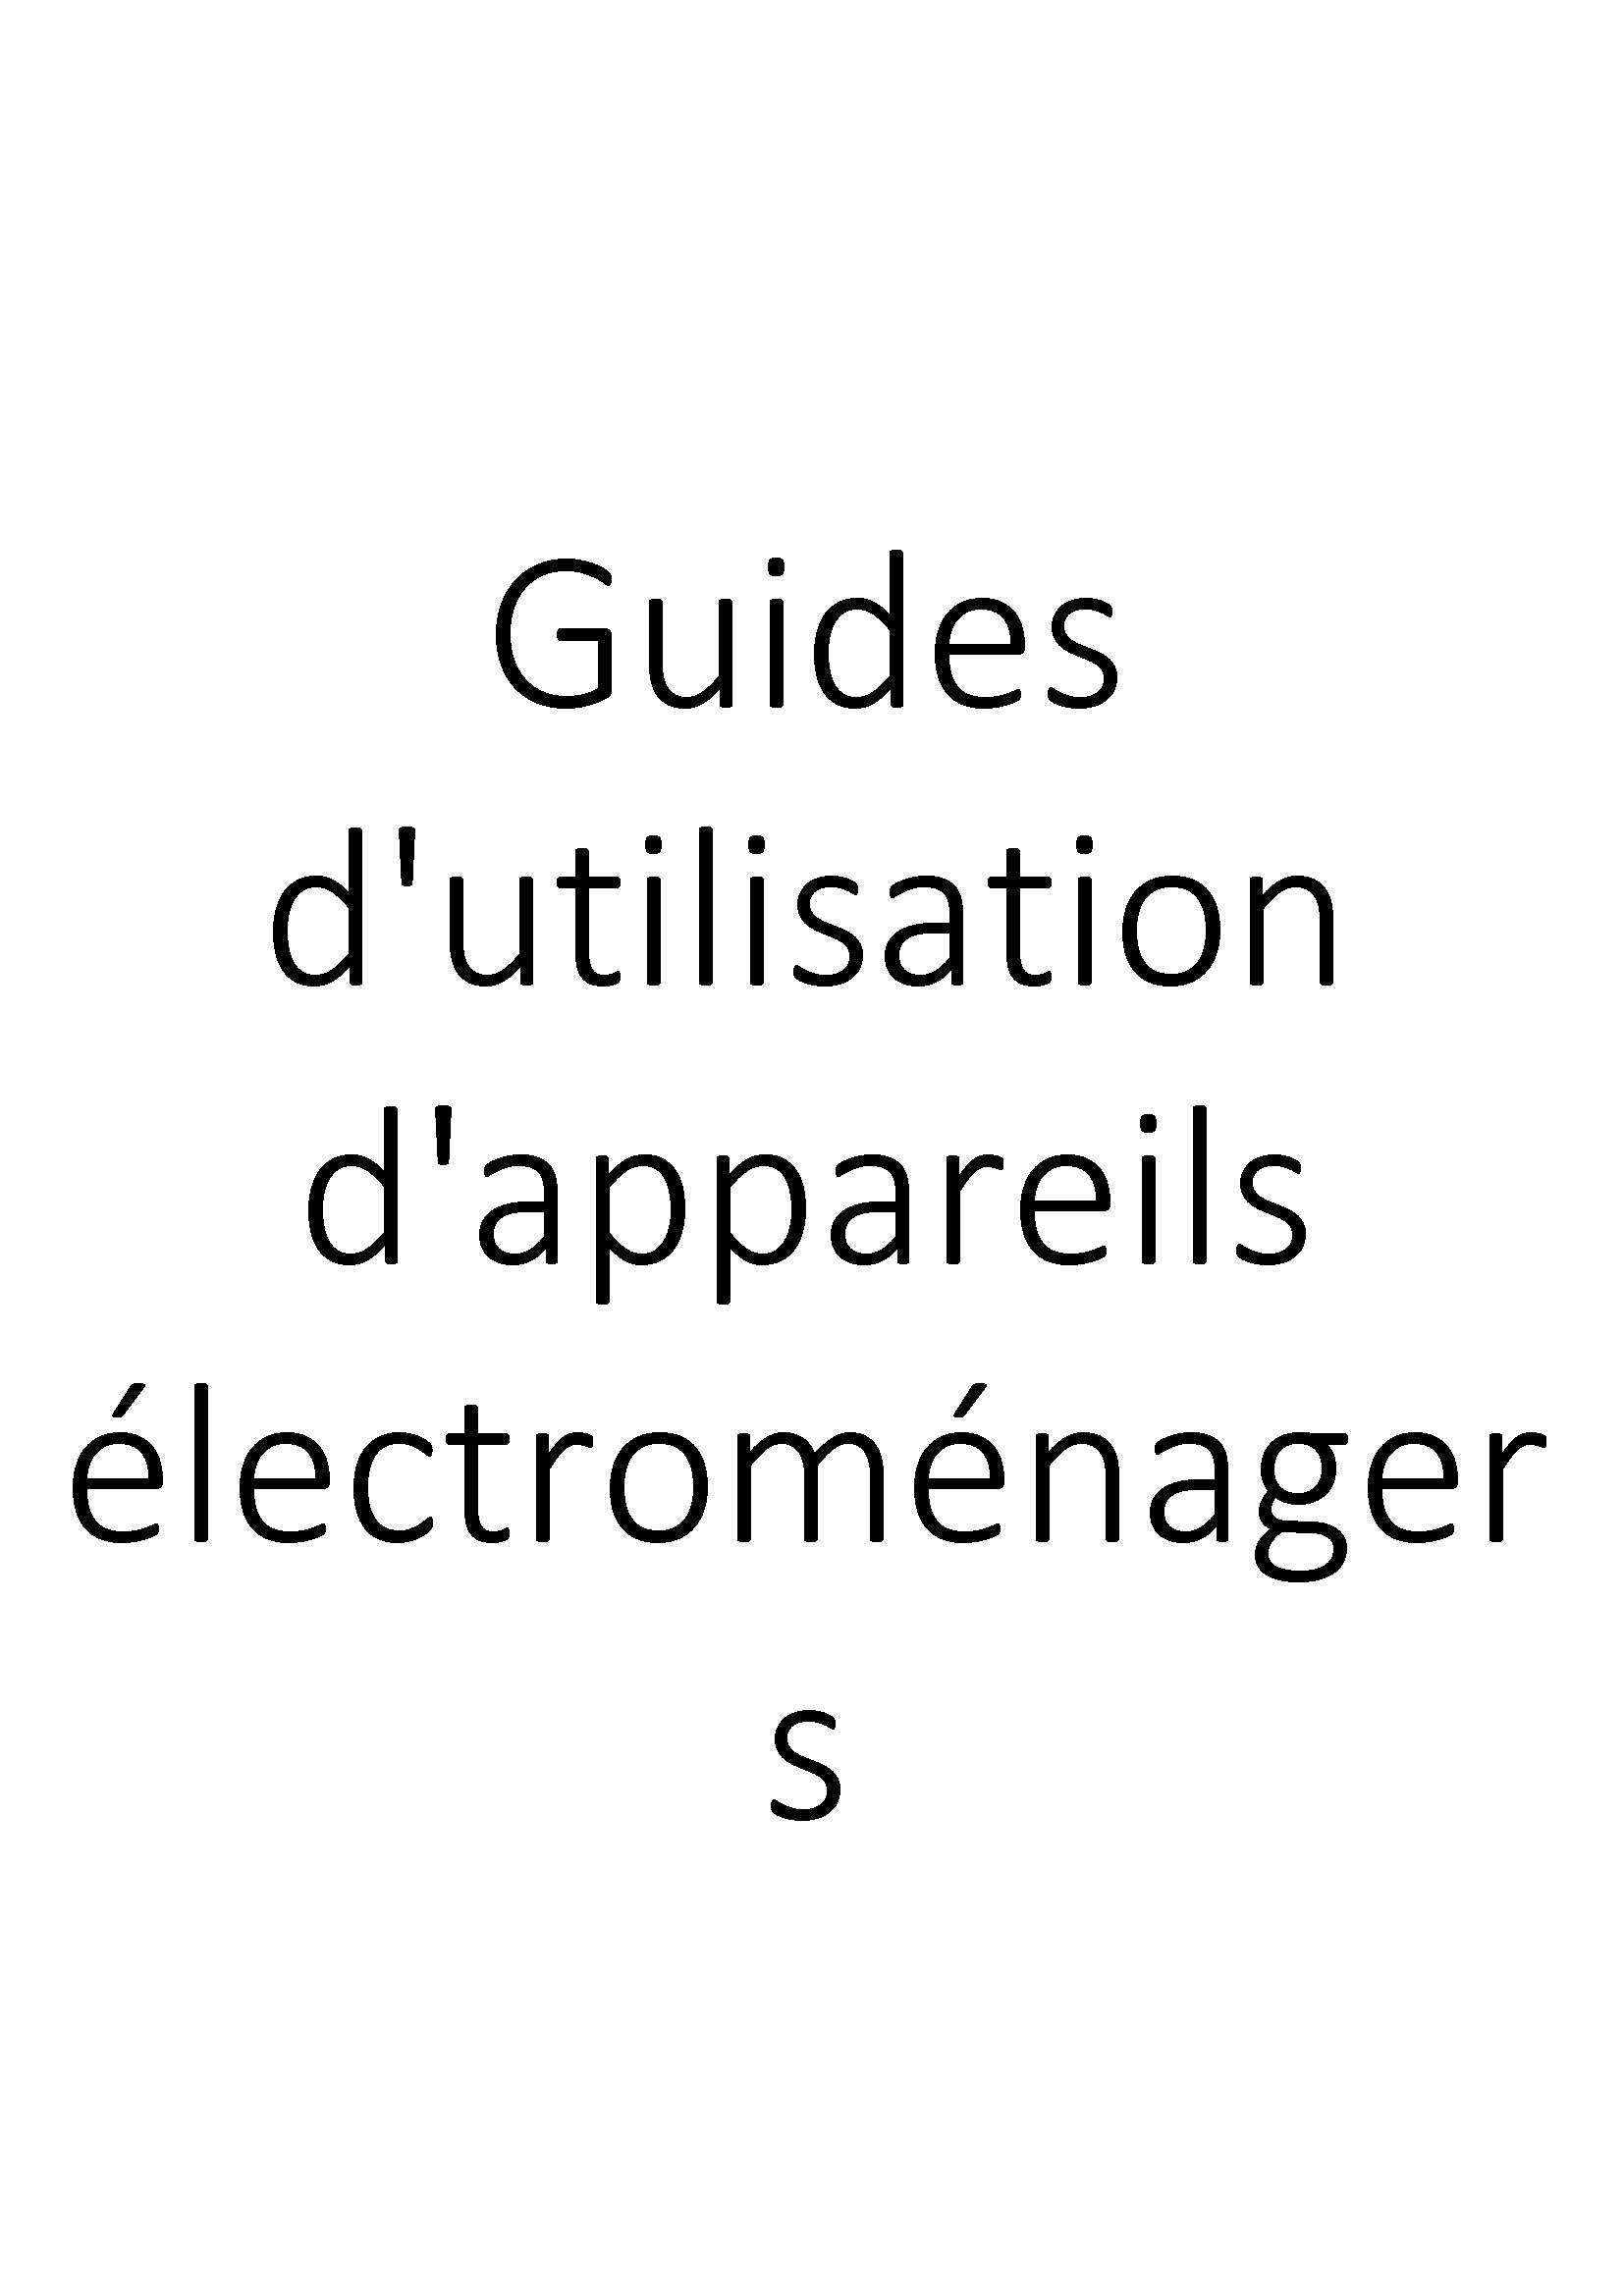 Guides d'utilisation d'appareils électroménagers clicktofournisseur.com